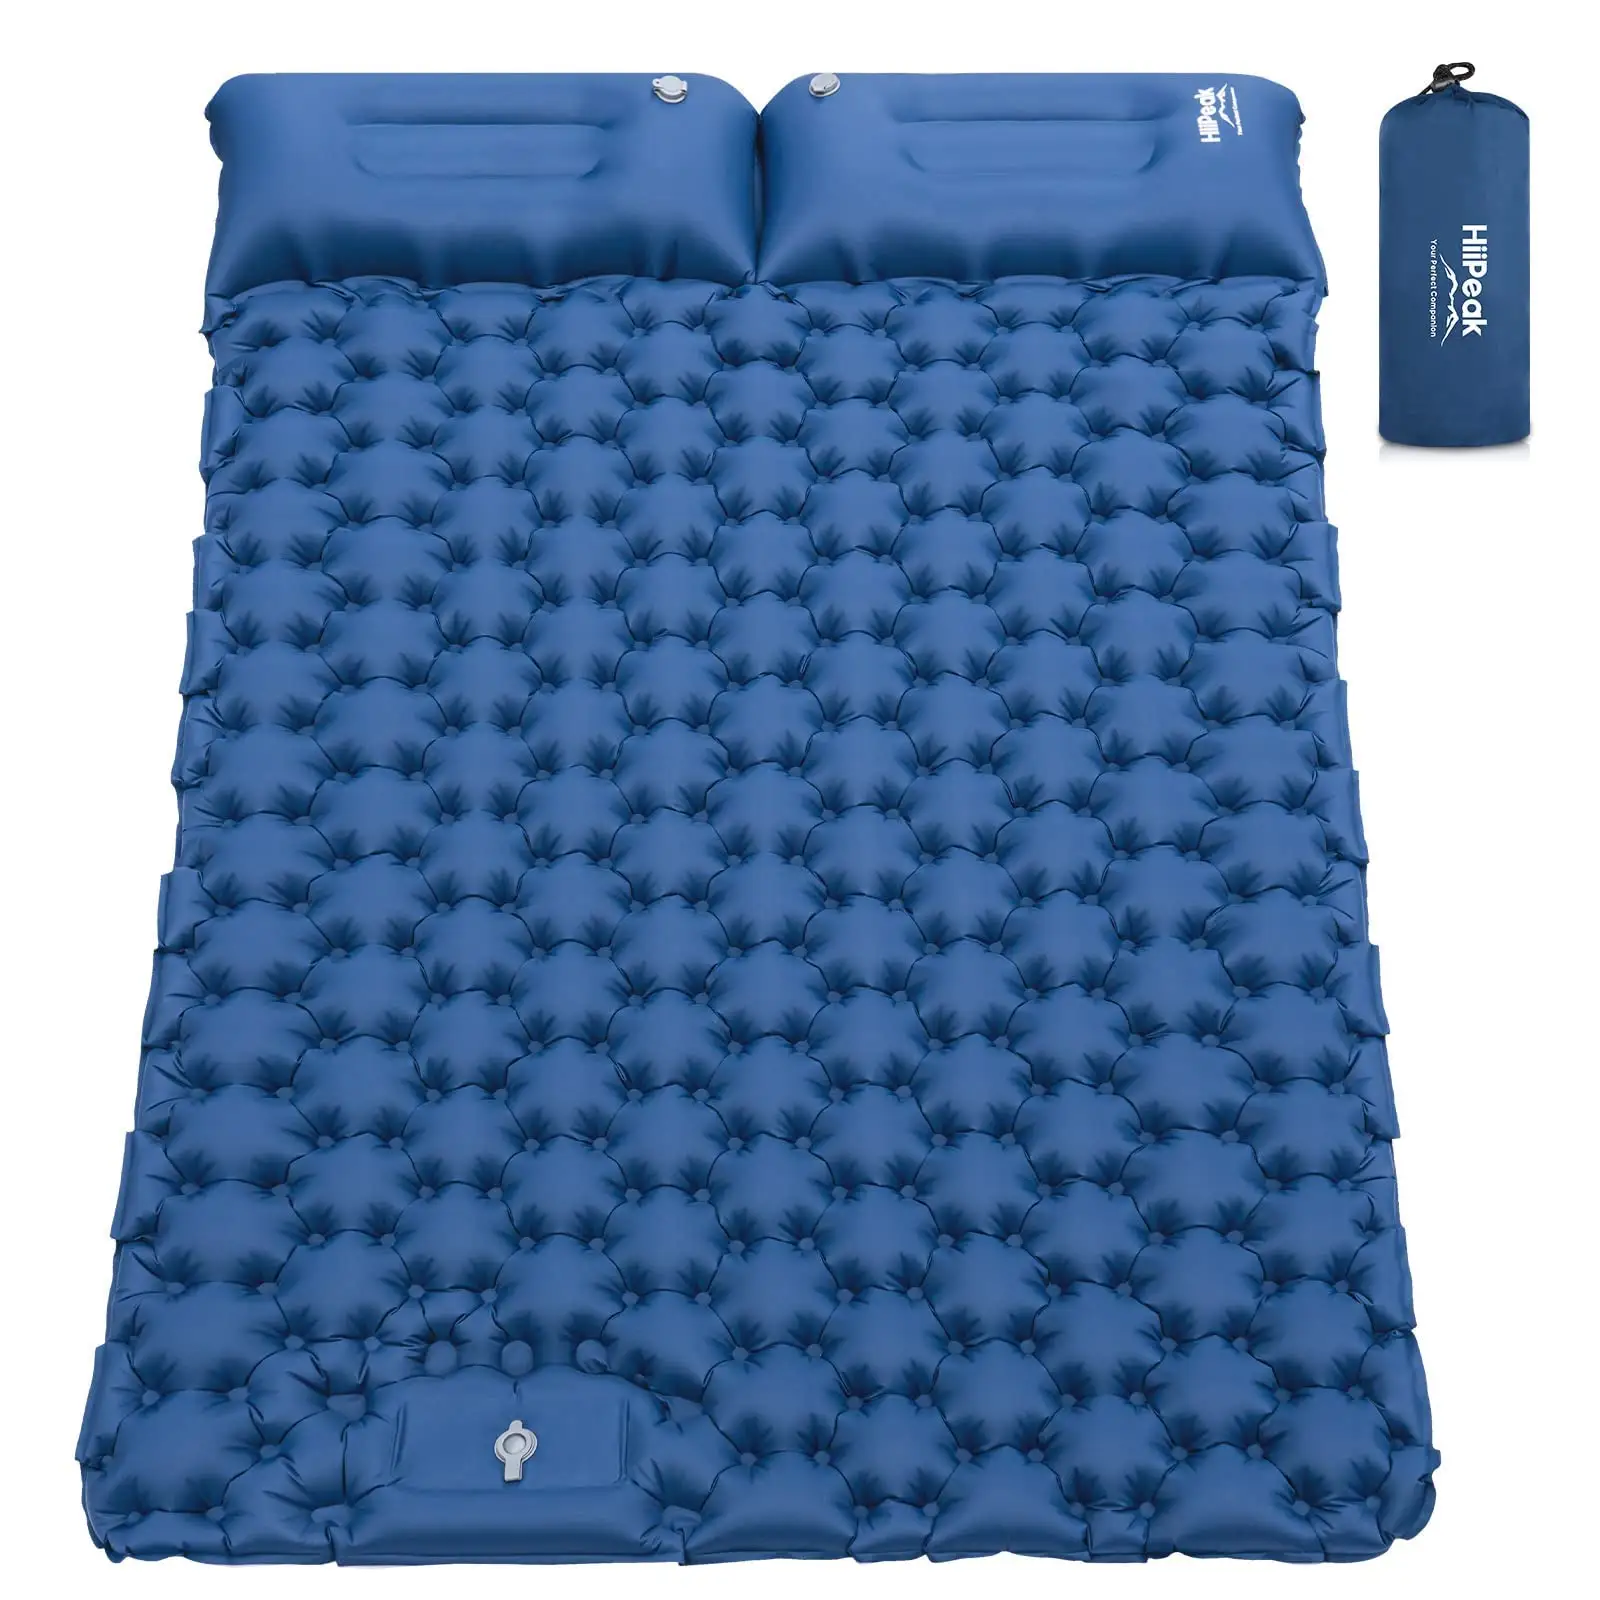 Apoio de dormir inflável para acampamento, apoio duplo para dormir, esteira ultraleve de acampamento, com travesseiro